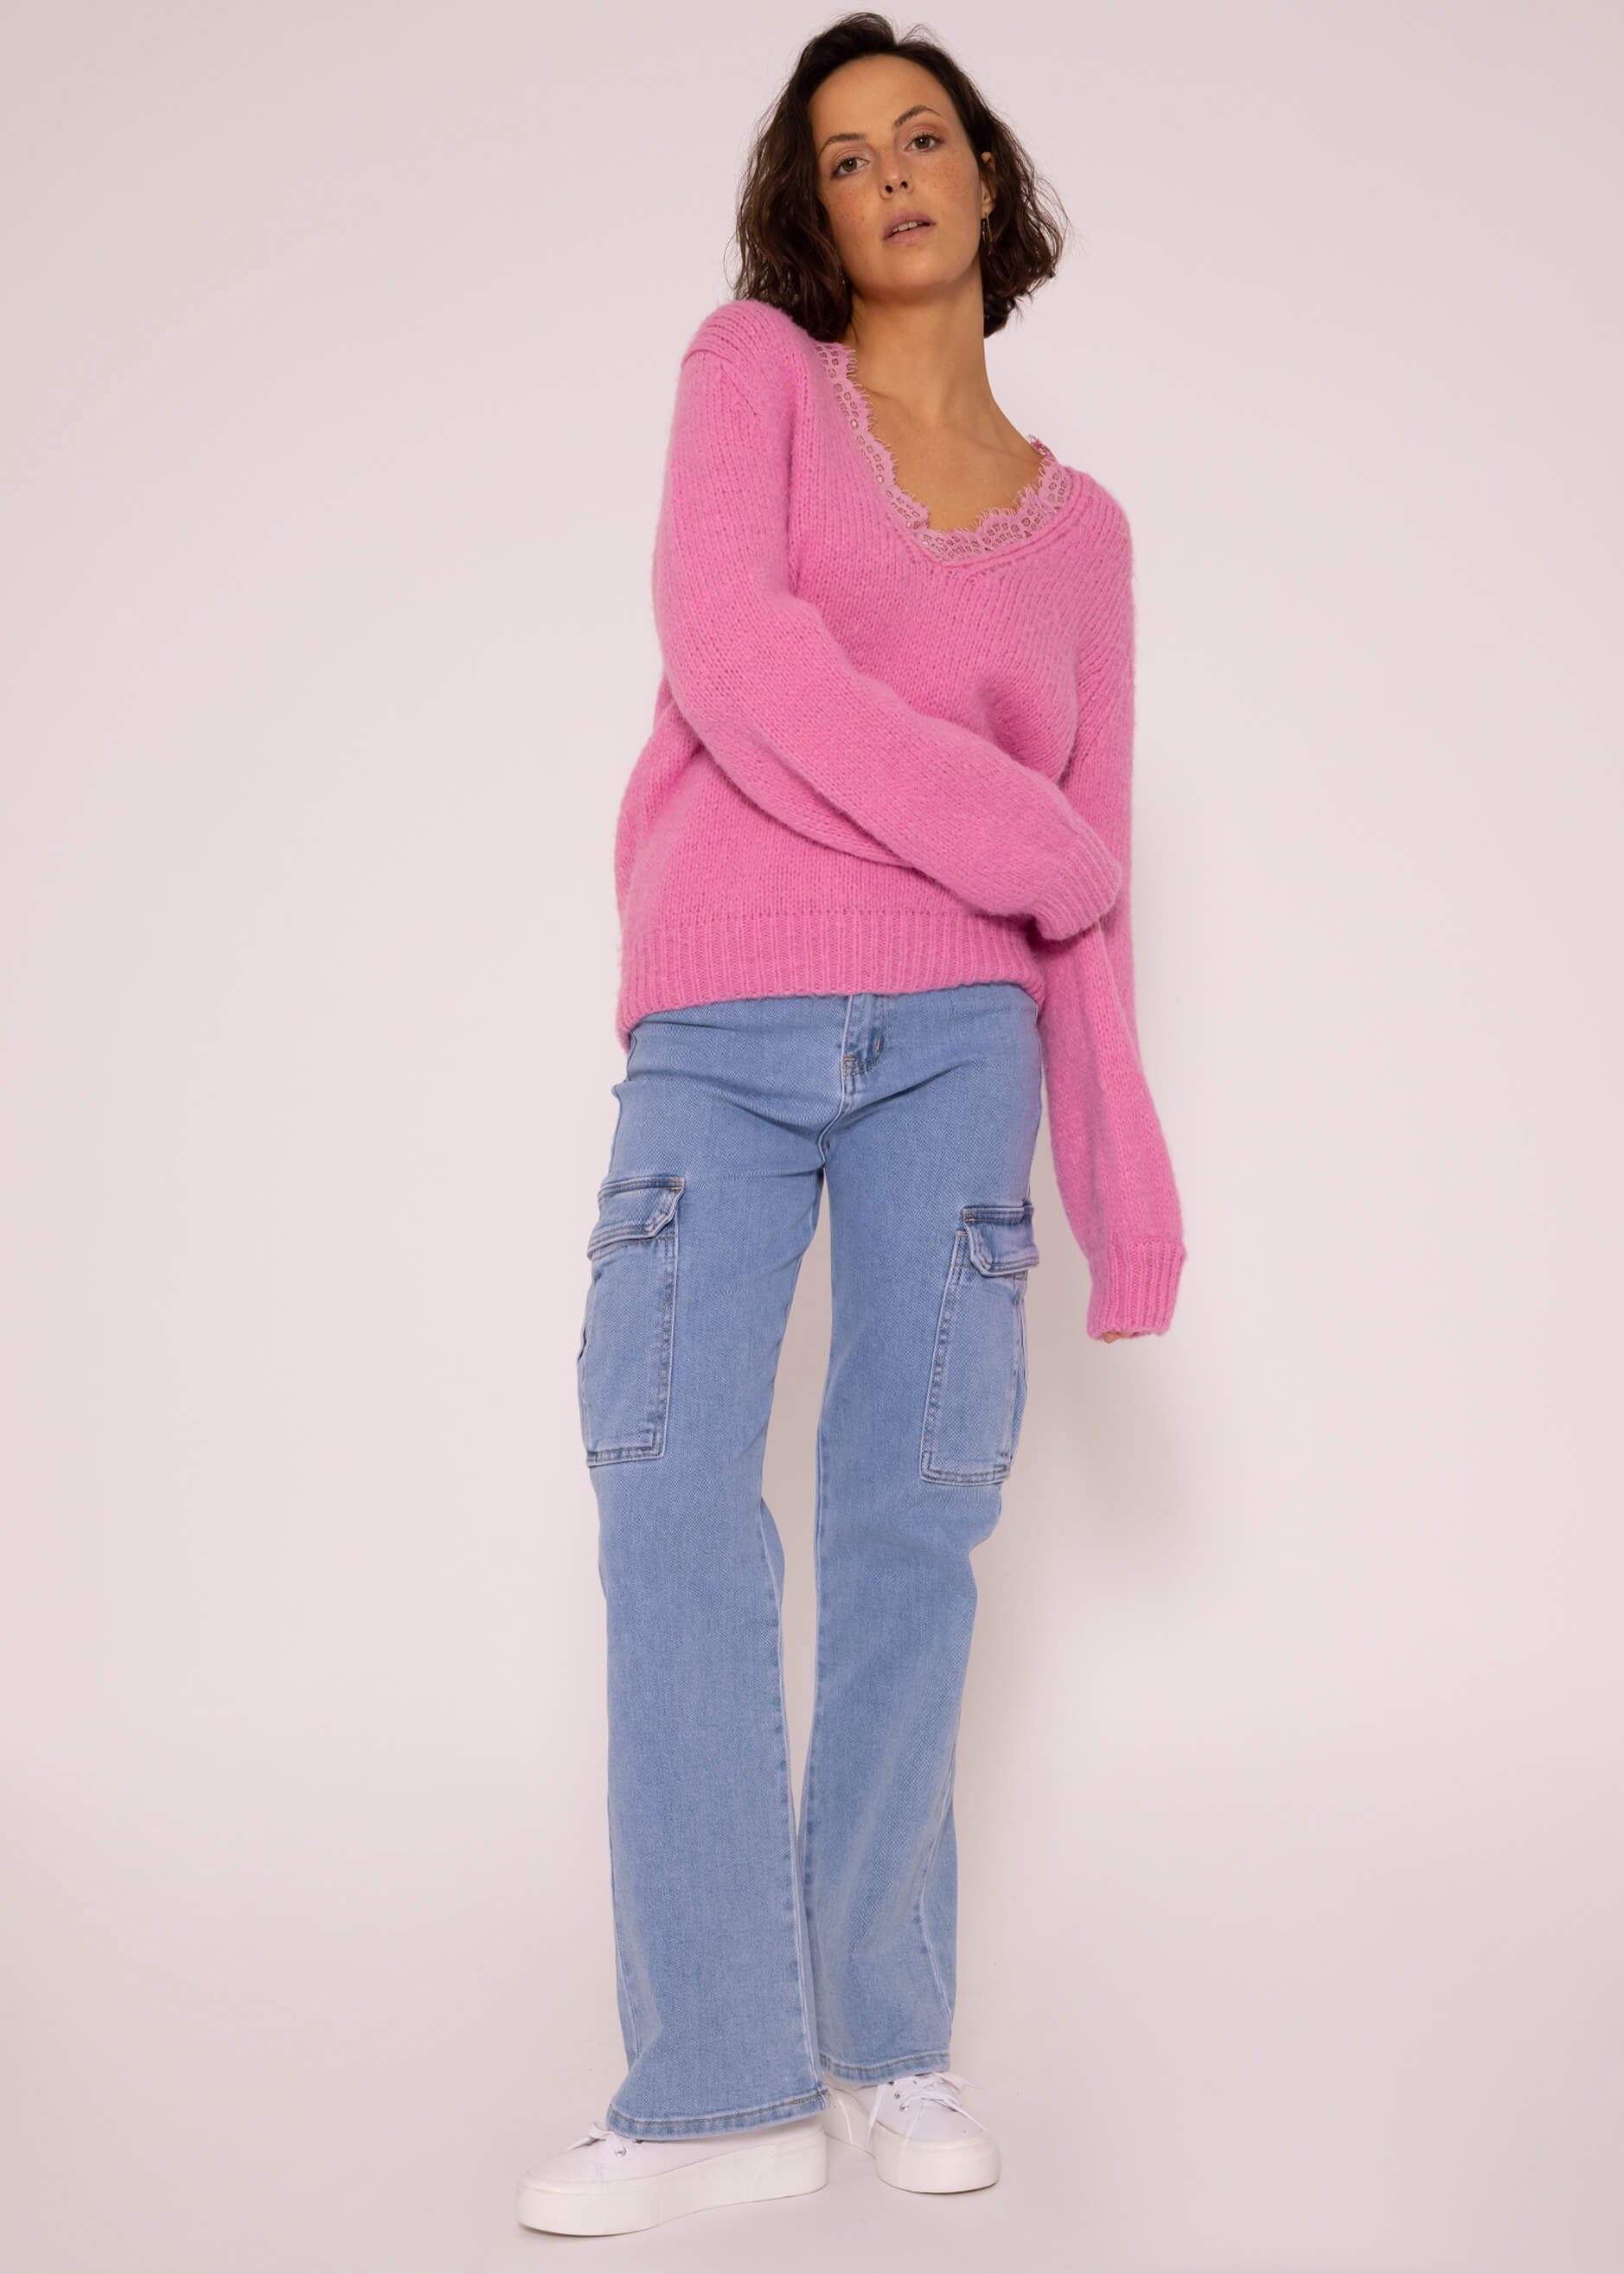 SASSYCLASSY Strickpullover Oversize Pullover Damen Lässiger Pink Strickpullover weichem Grobstrick Spitzen-Ausschnitt aus mit